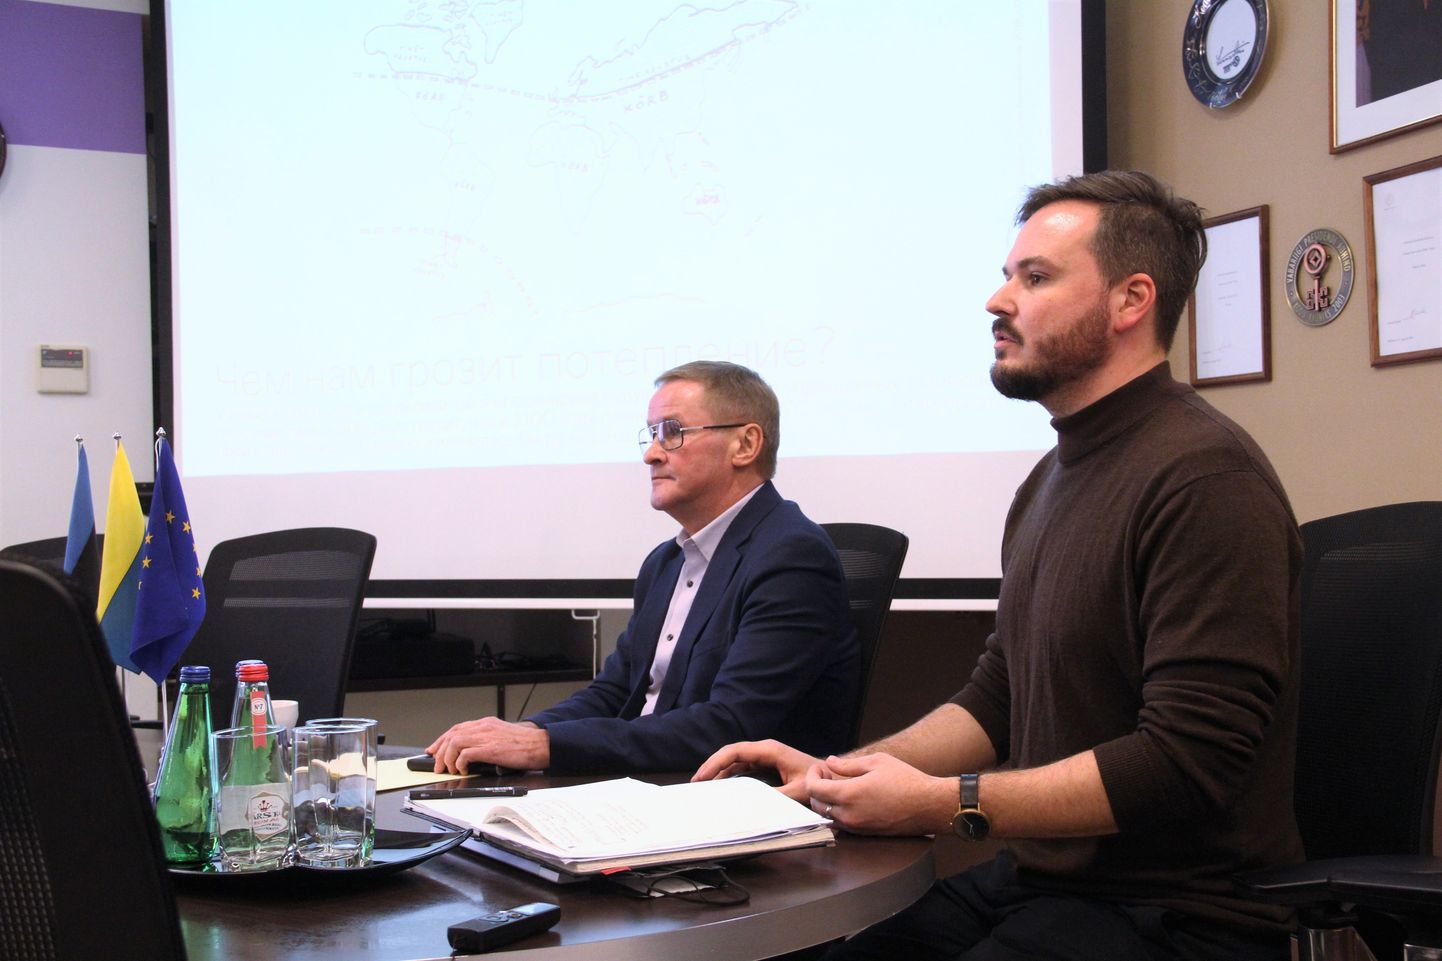 Яак Ааб и Иван Сергеев рассказывают в Нарве о "справедливом переходе".